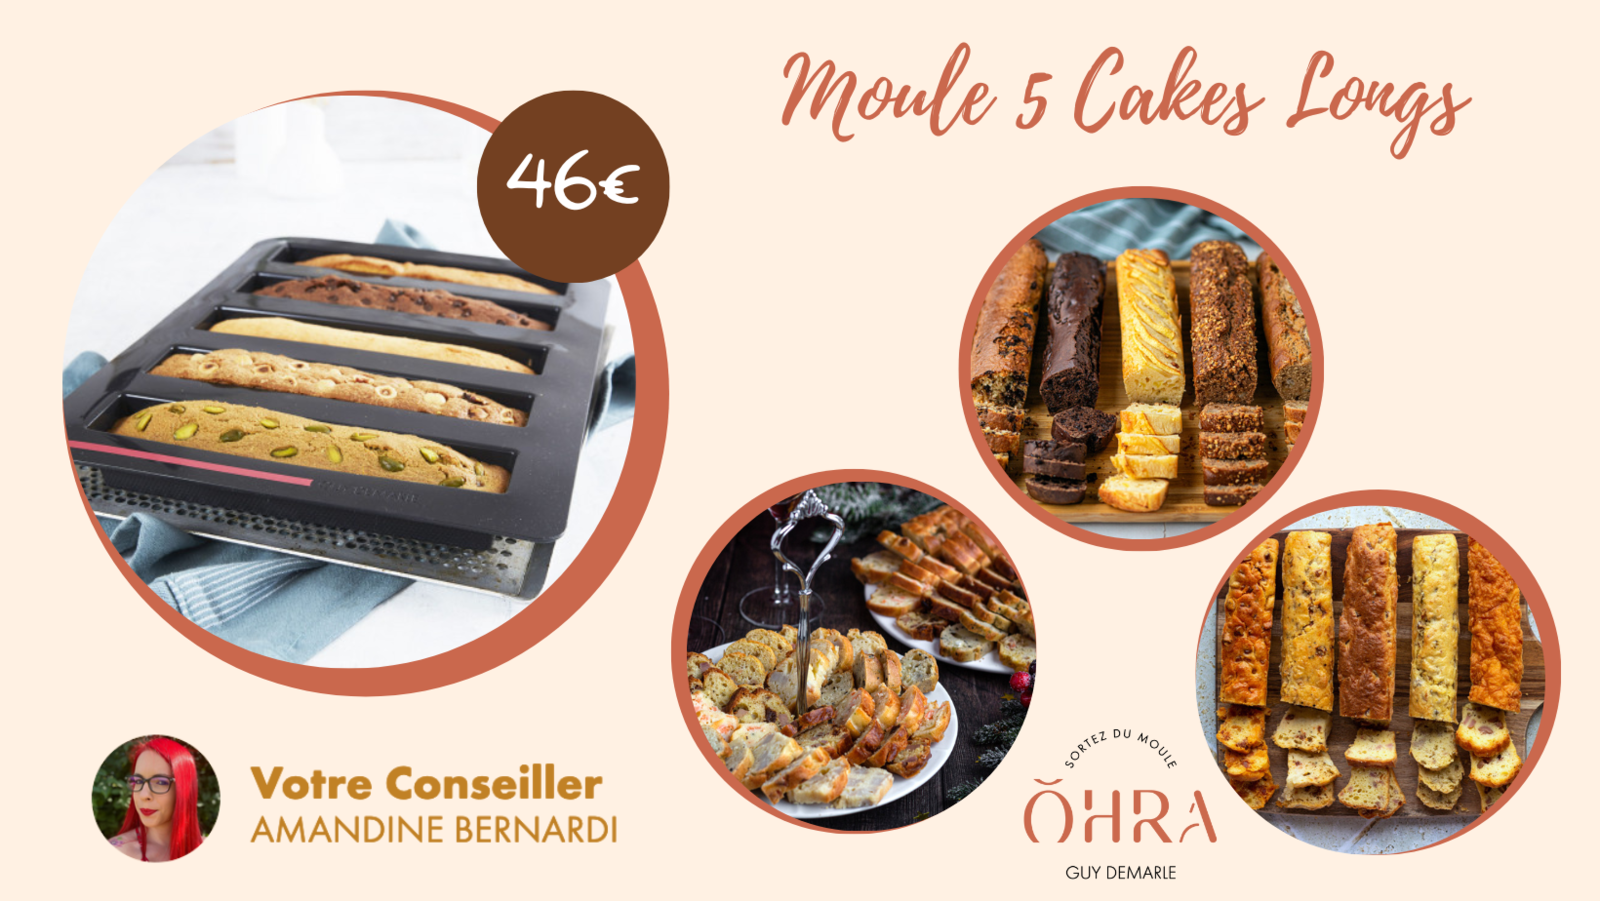 Farandole de cakes salés - Moule 5 cakes - Demarle - La Cuisine